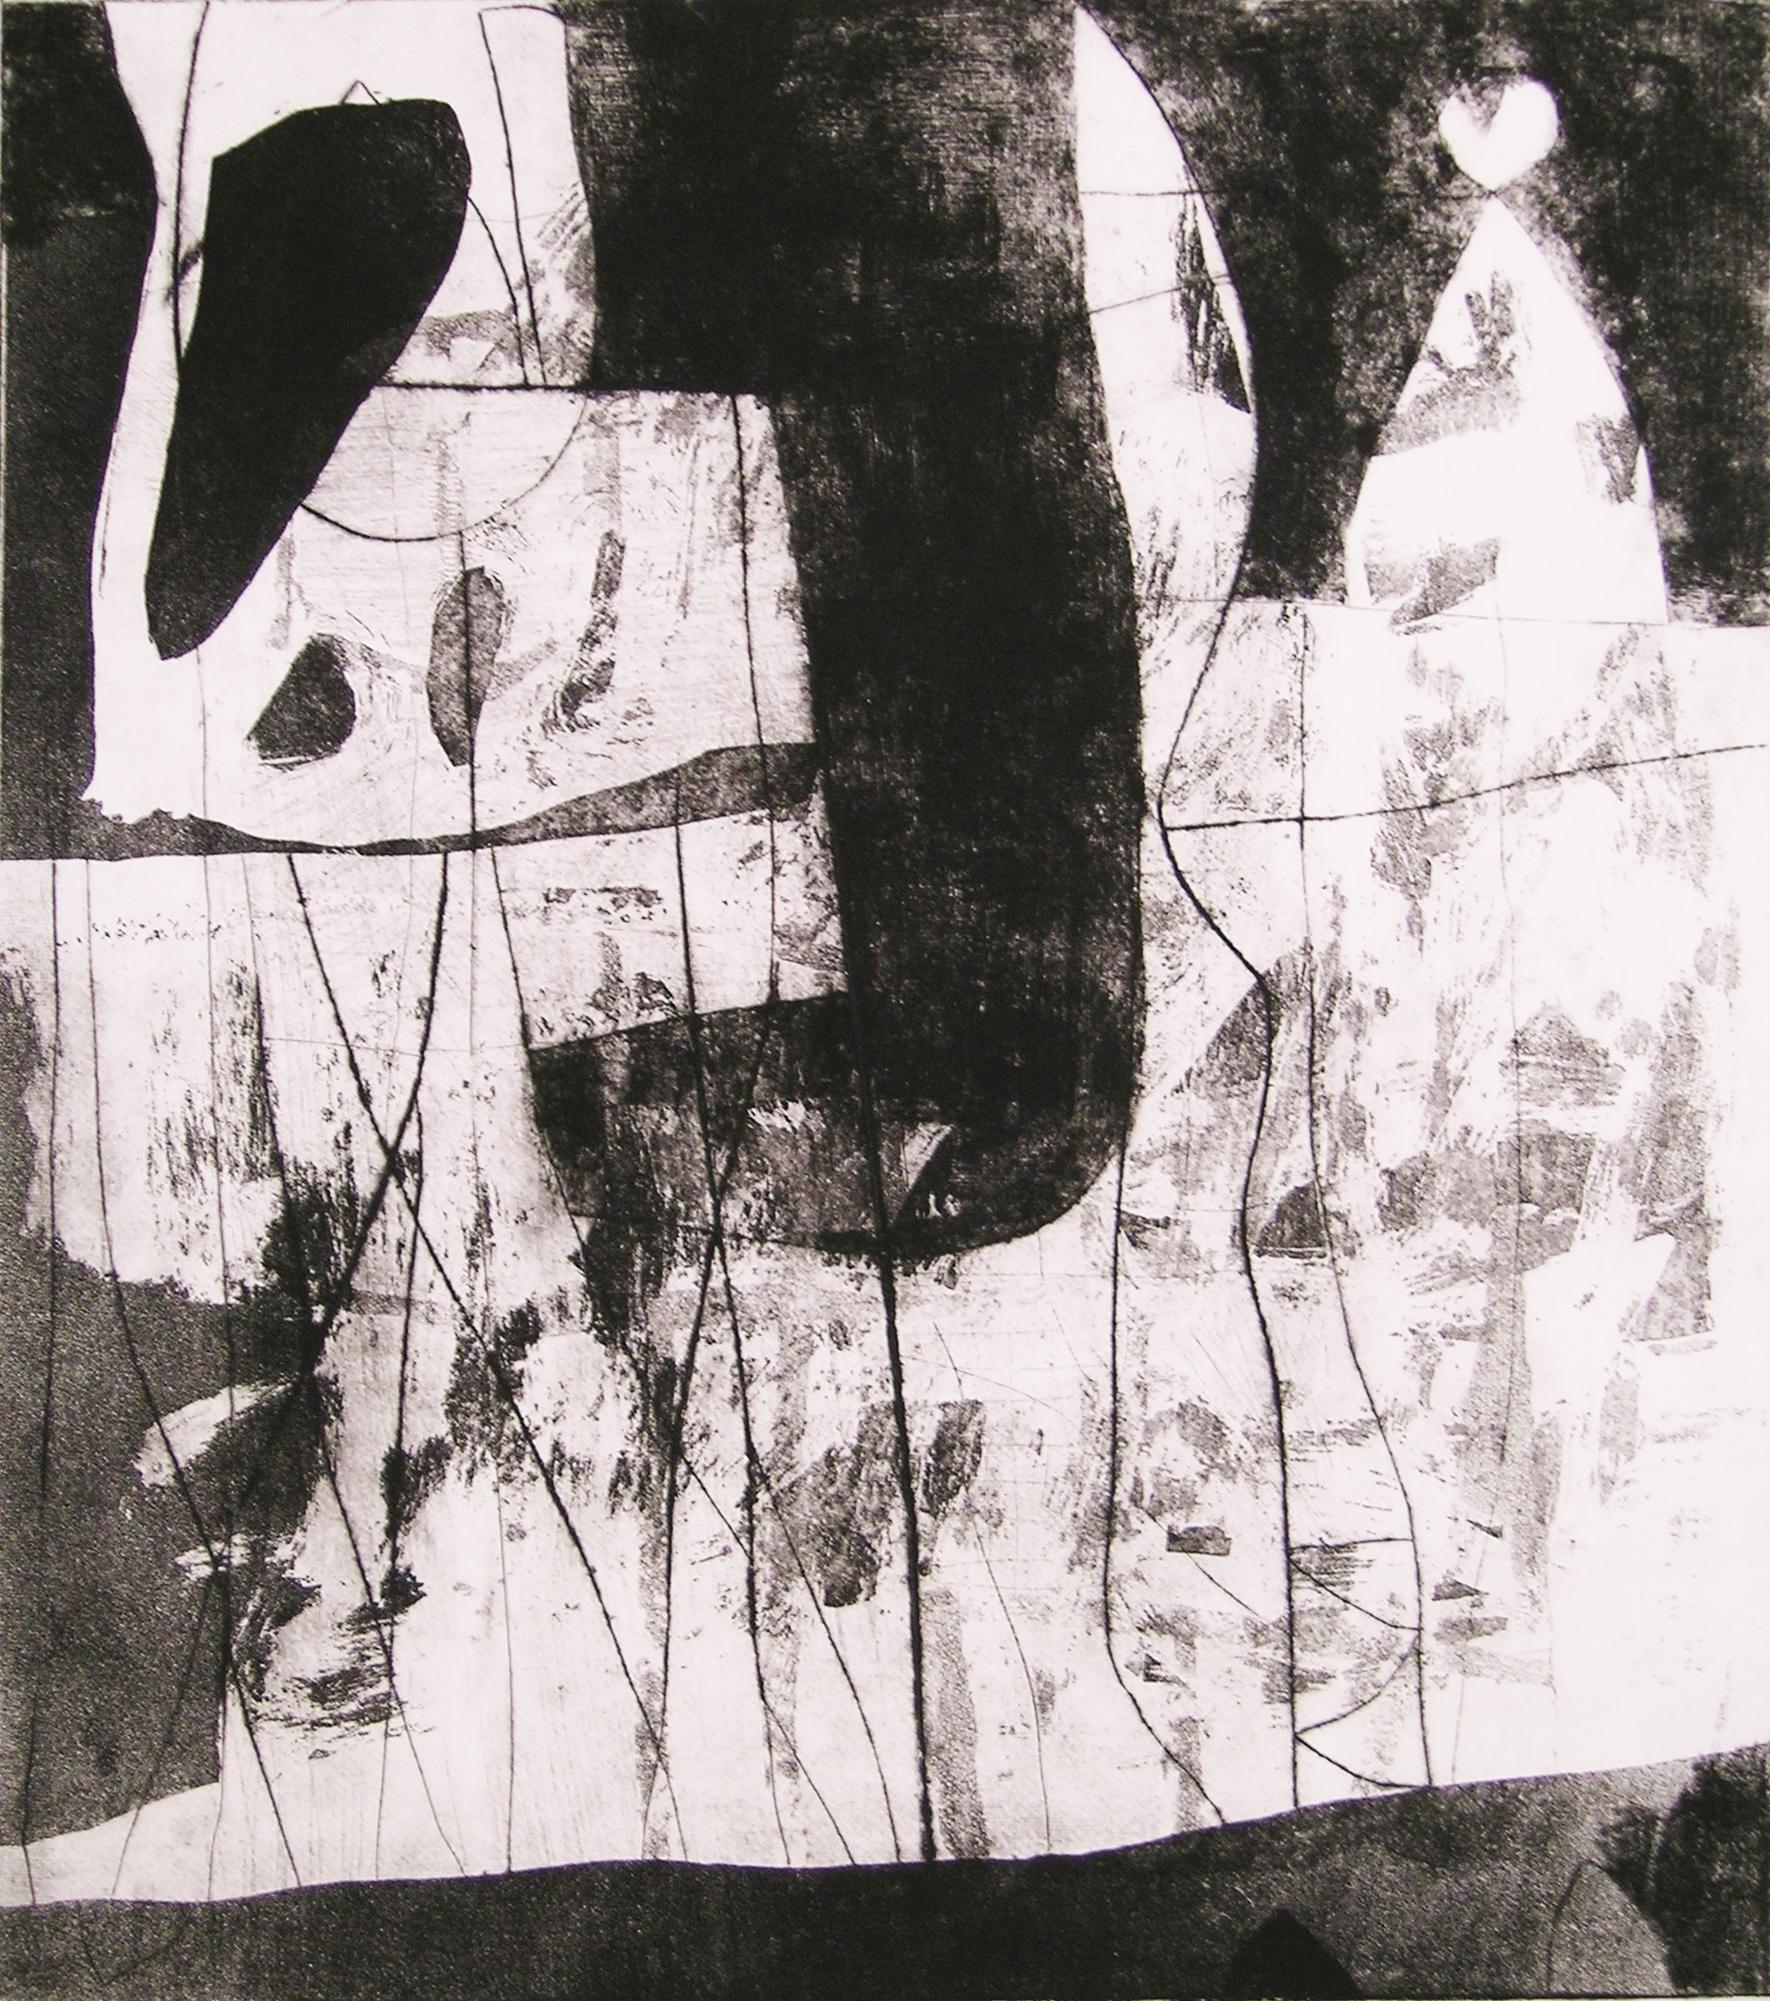 40x30" - Impression abstraite en noir et blanc - non encadrée